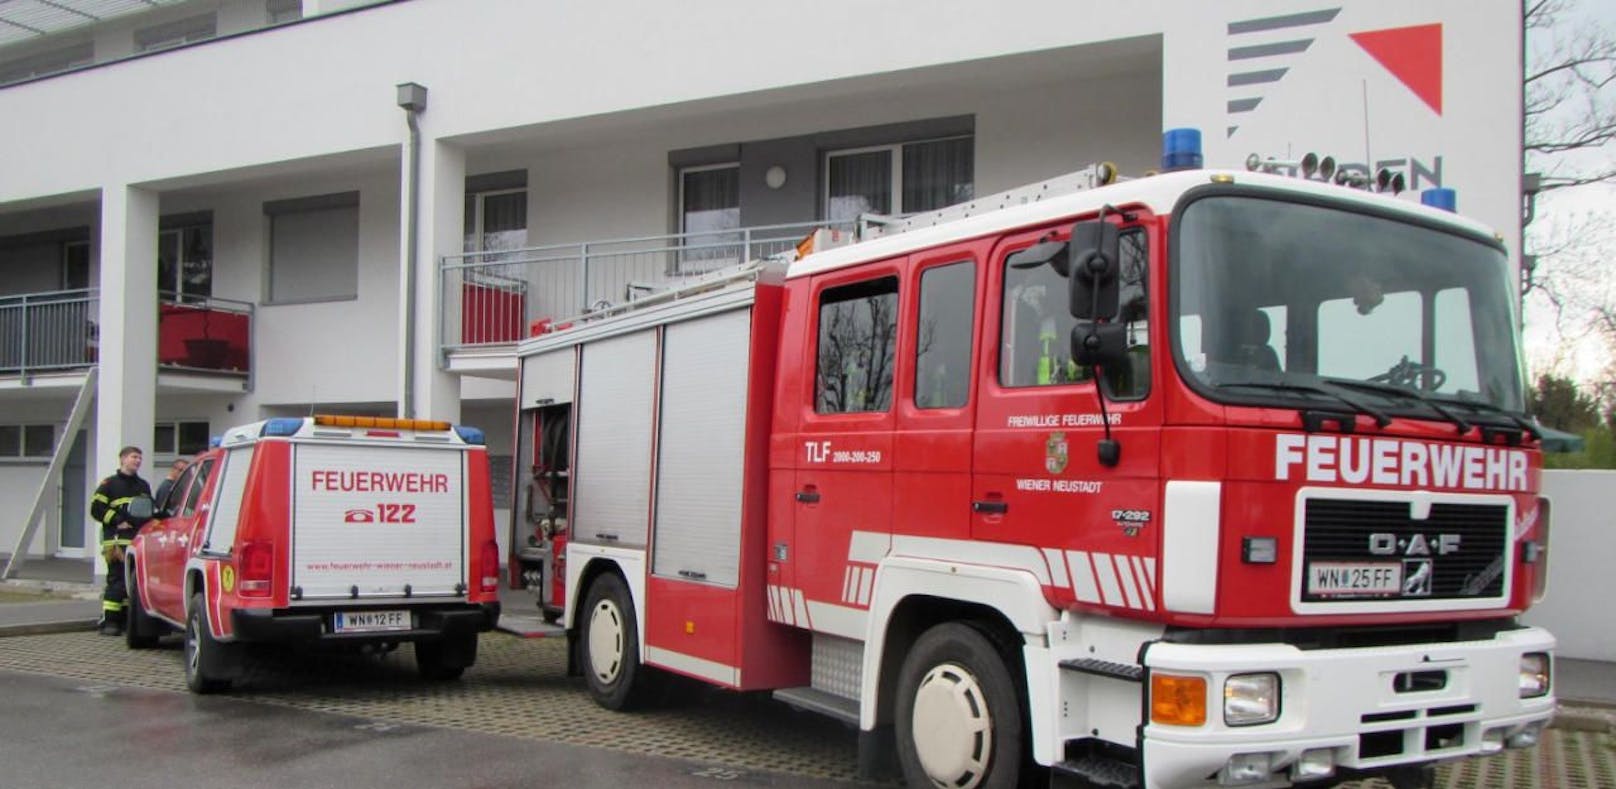 Stickstoff-Alarm: Haus nach Brand evakuiert